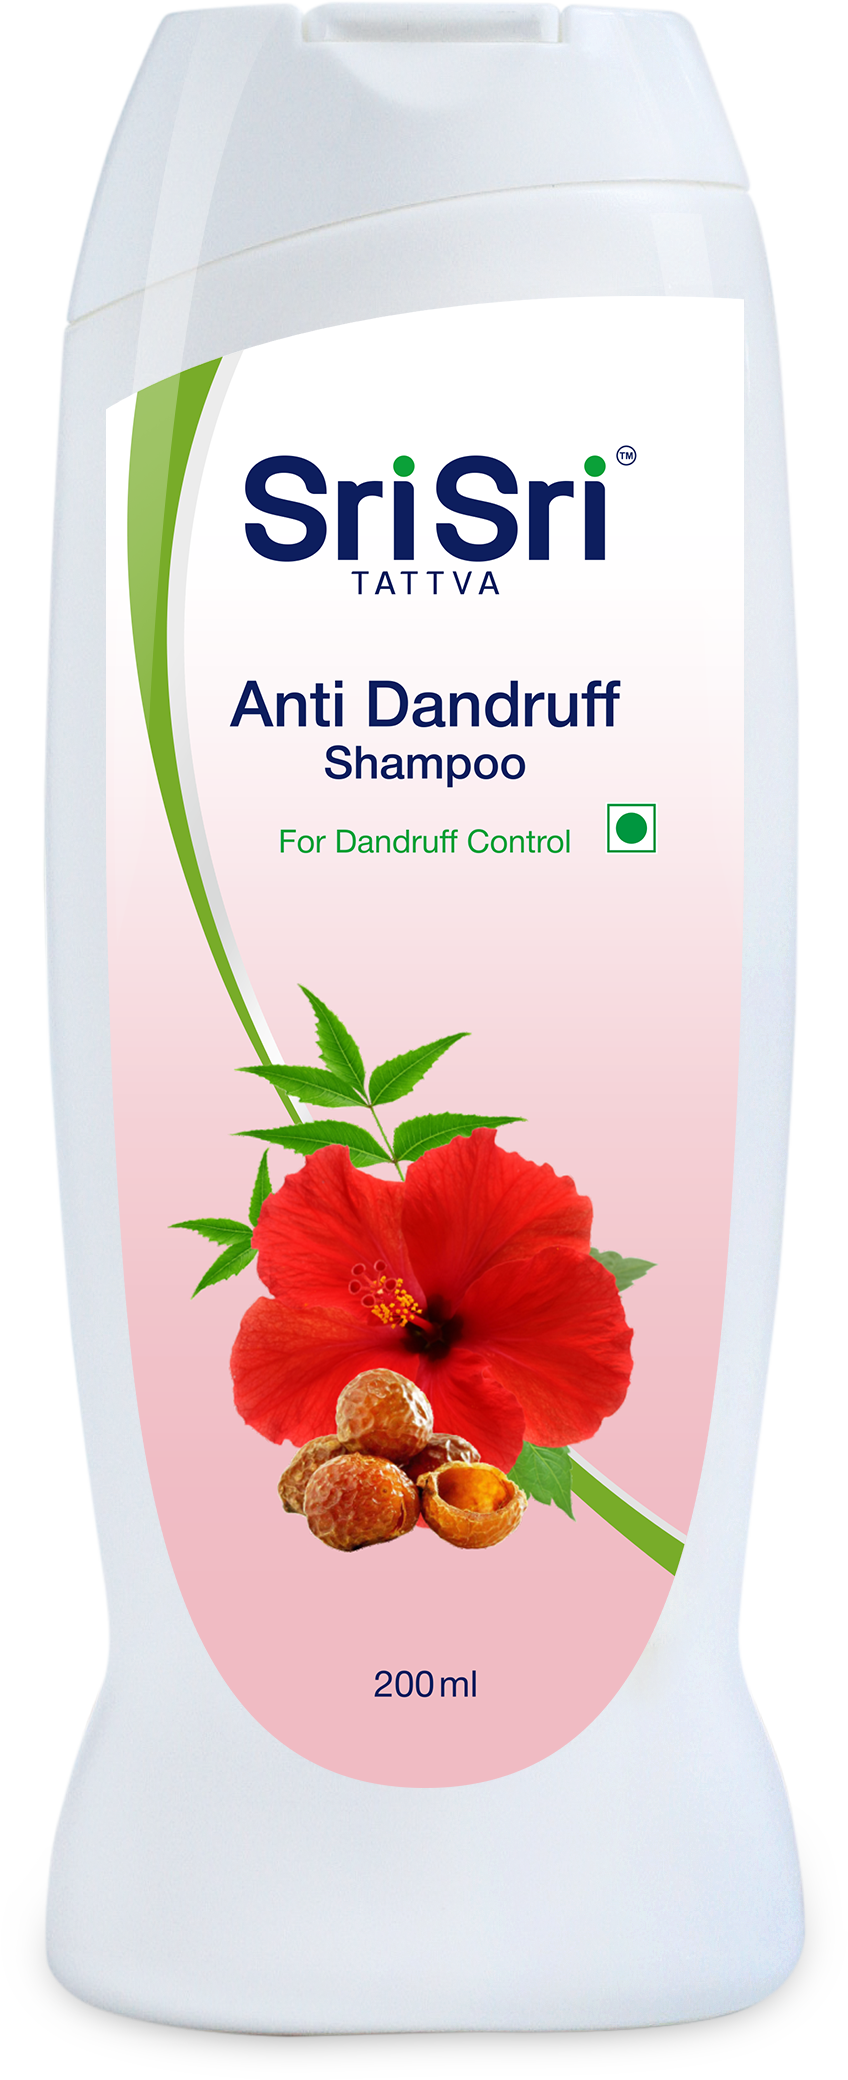 Buy Sri Sri Tattva Anti Dandruff Shampoo at Best Price Online